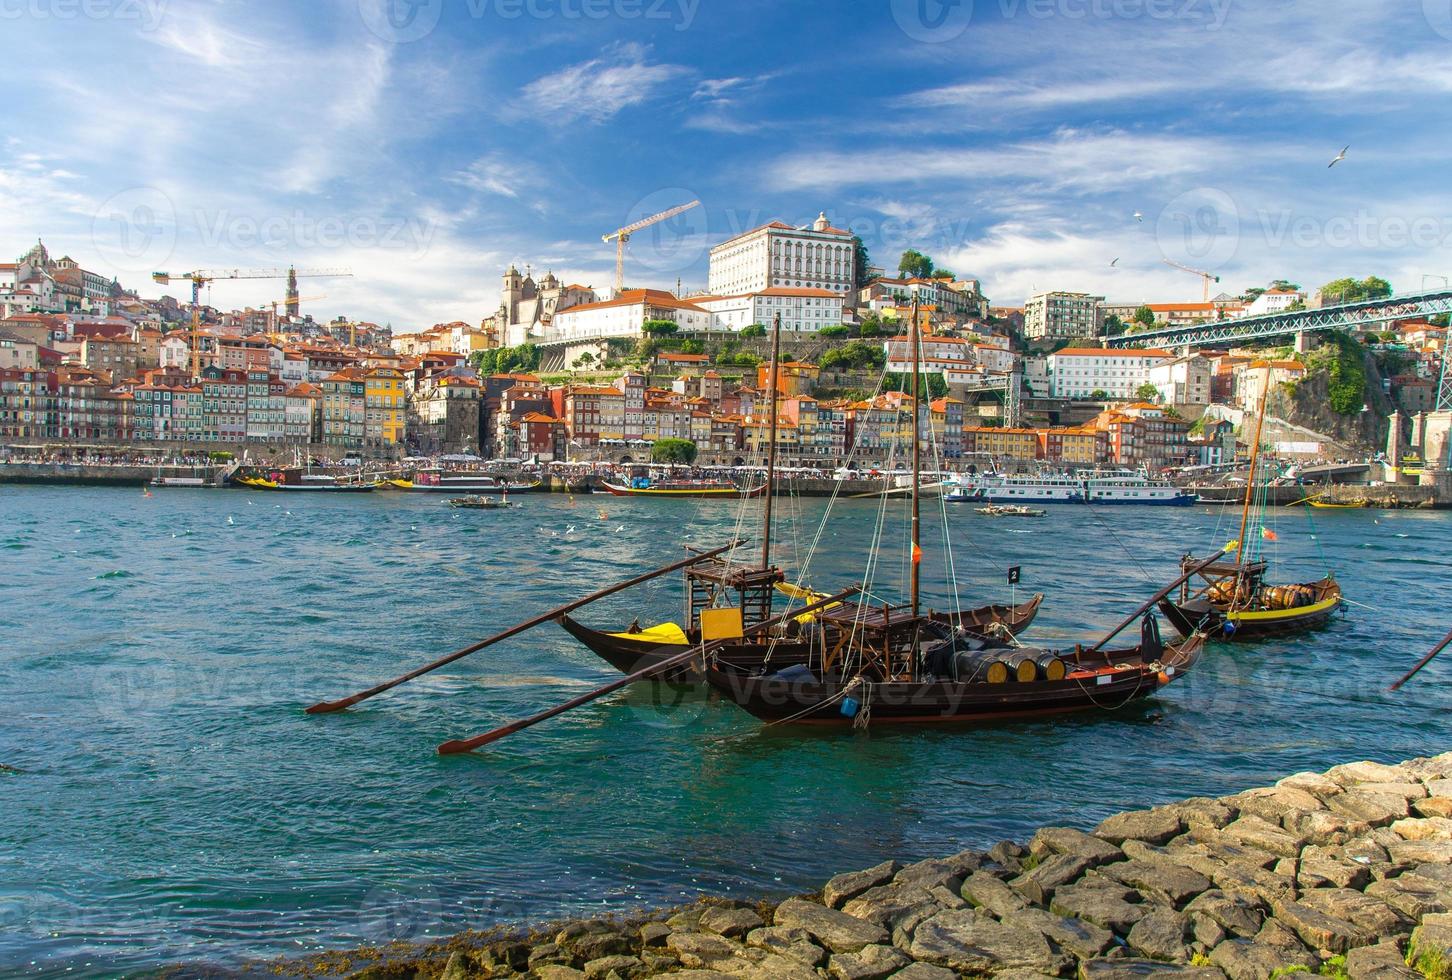 portugal, stadslandskap porto, en grupp gula träbåtar med vinportfat på dourofloden foto